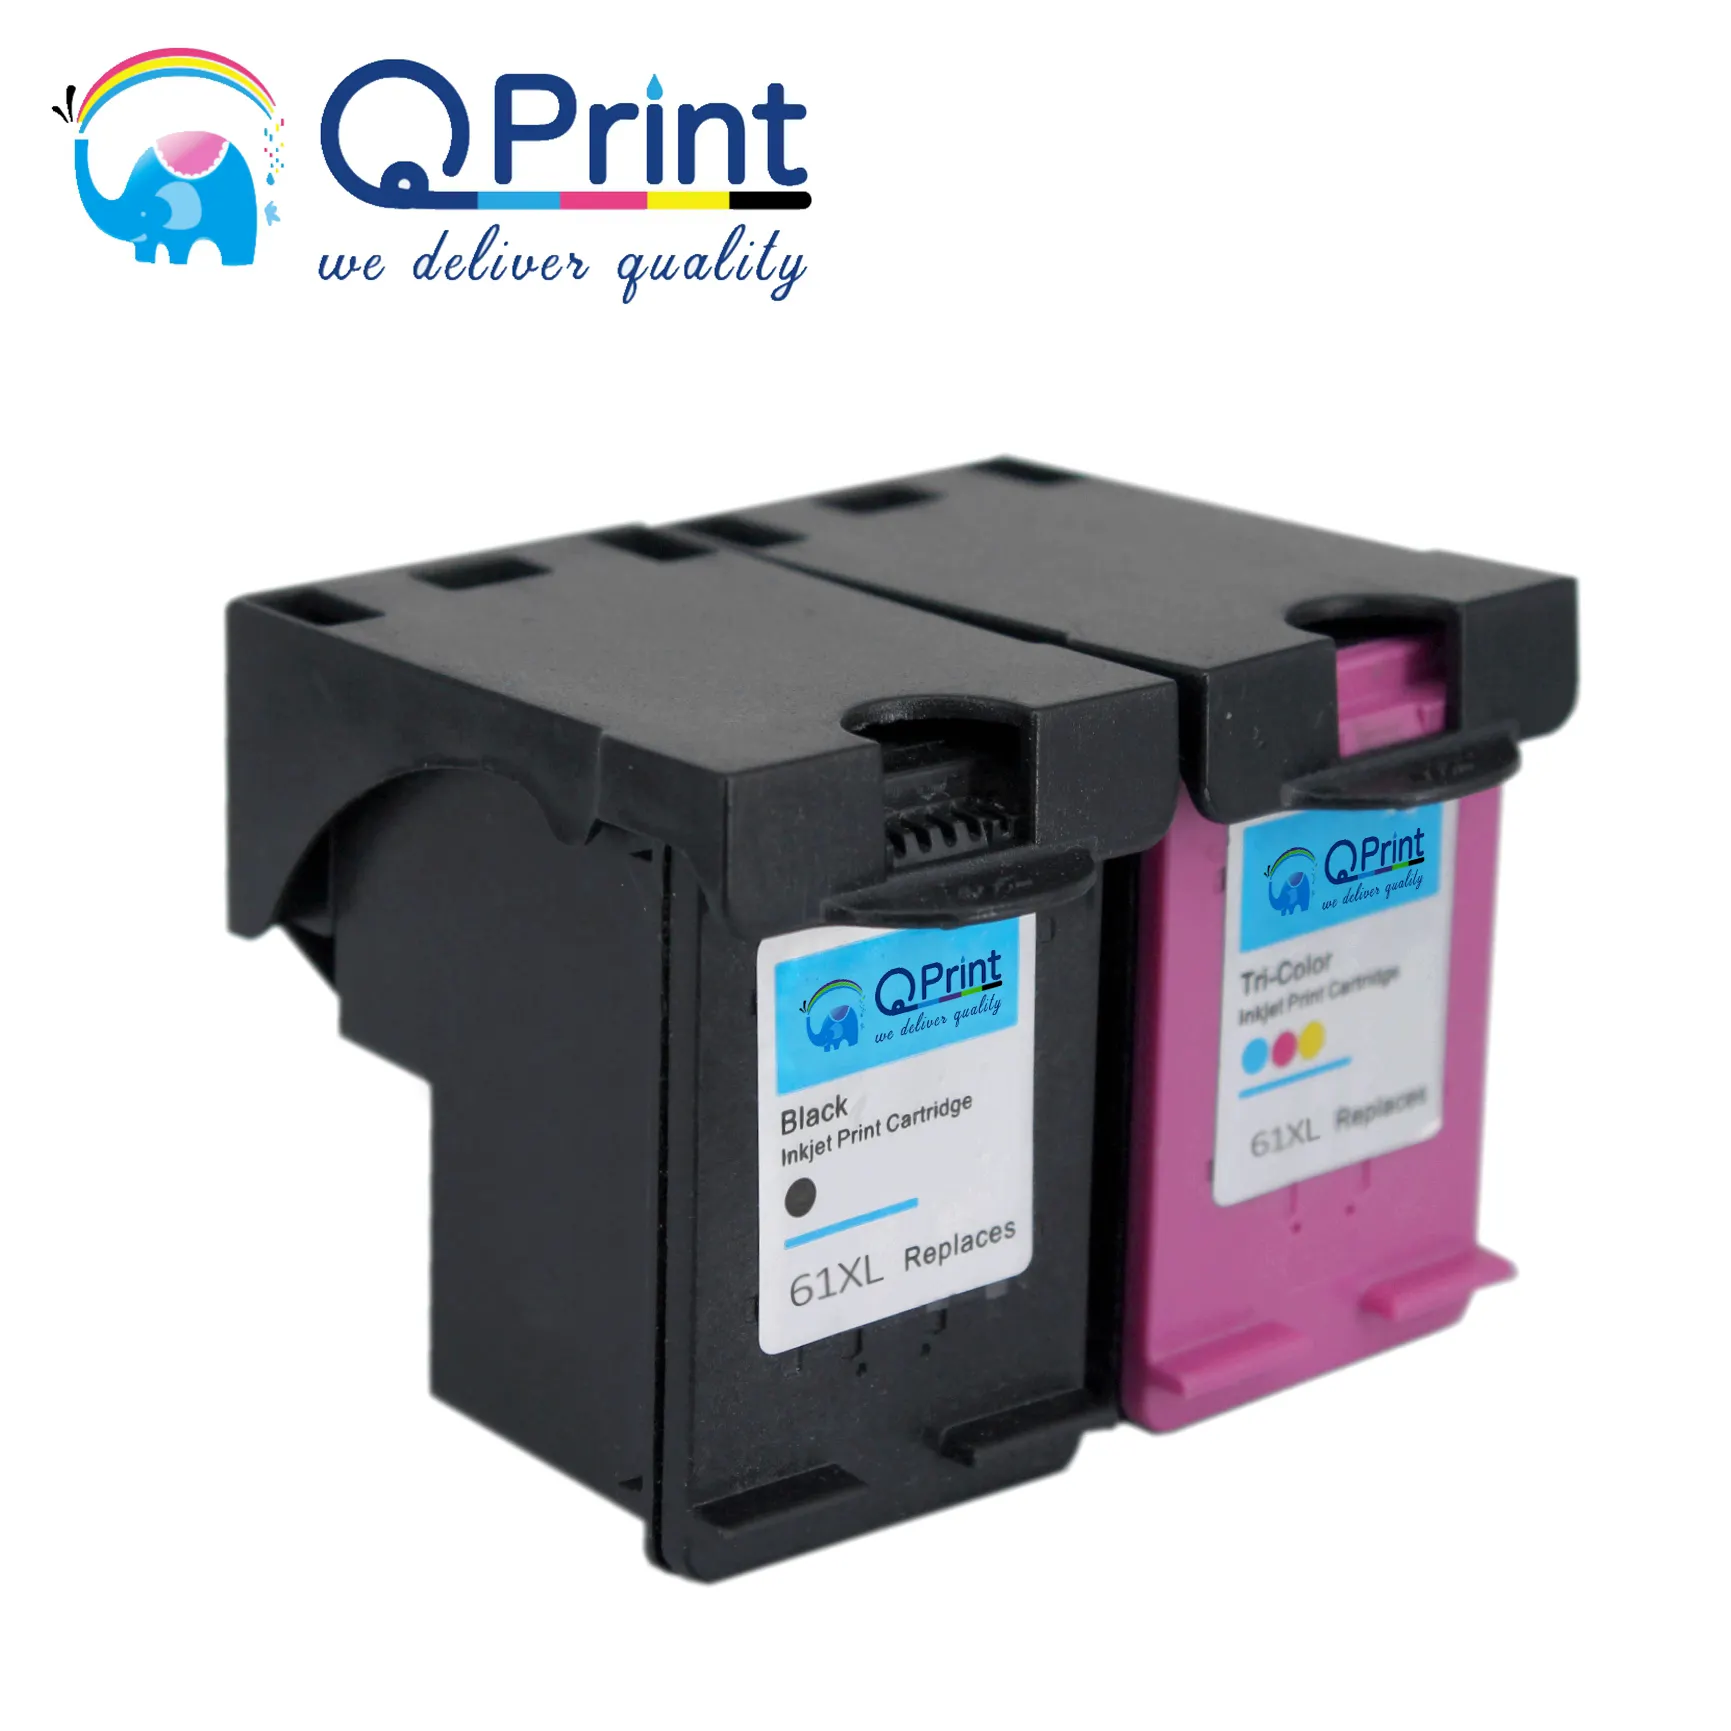 Heshun Premium printer ink cartridges 61XL used for HP Deskjet 2620 2622 4630 4632 printer